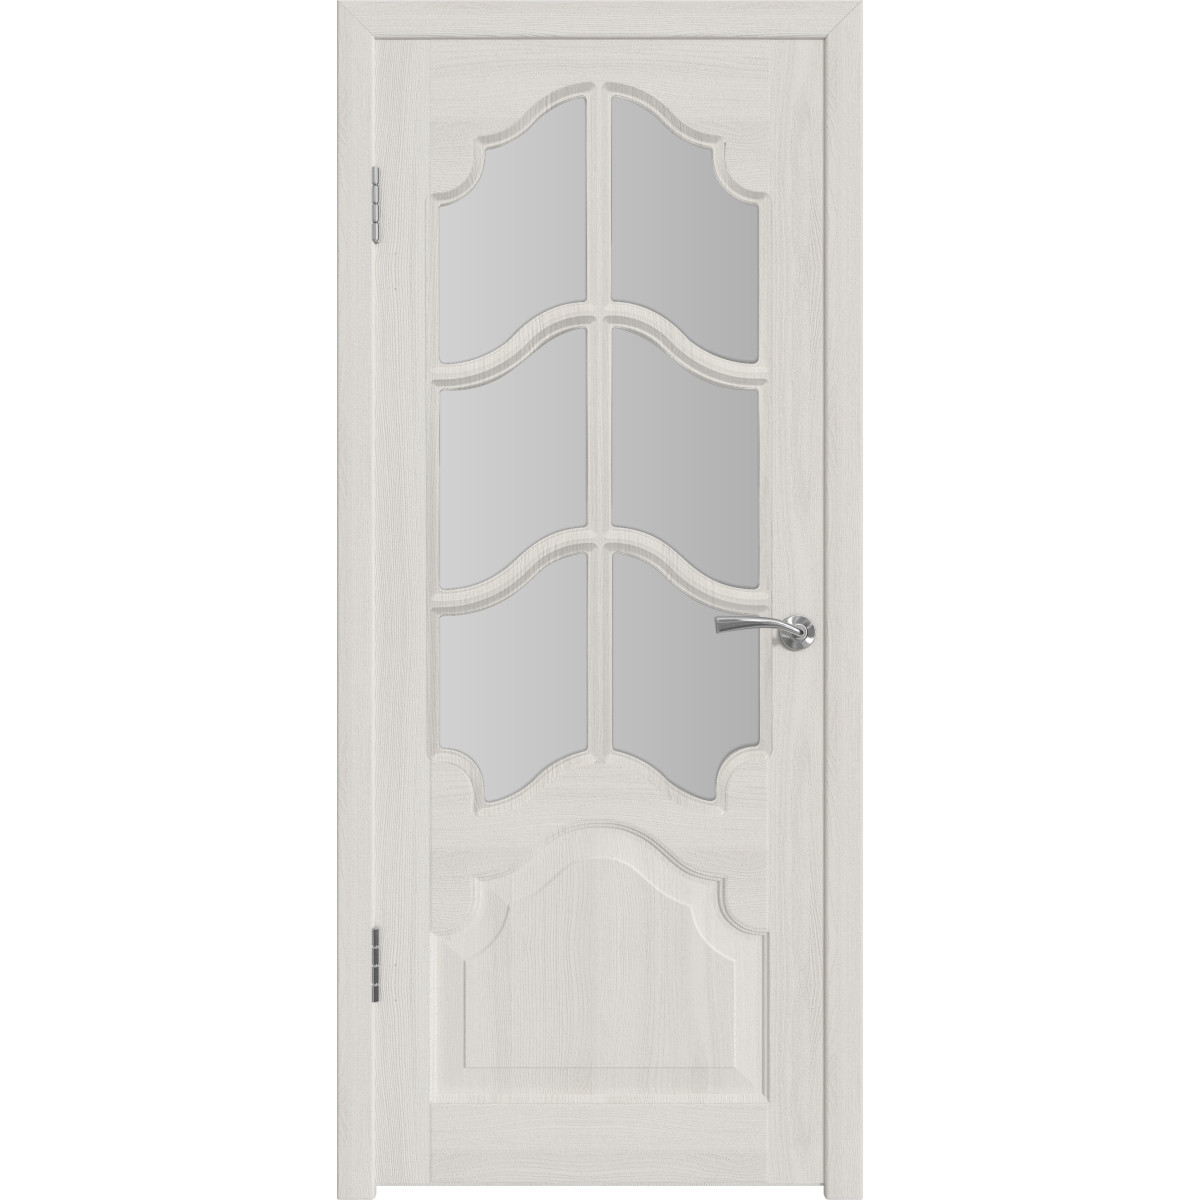 Дверь межкомнатная остеклённая с замком и петлями в комплекте Венеция 90x200 см ПП цвет белёный дуб